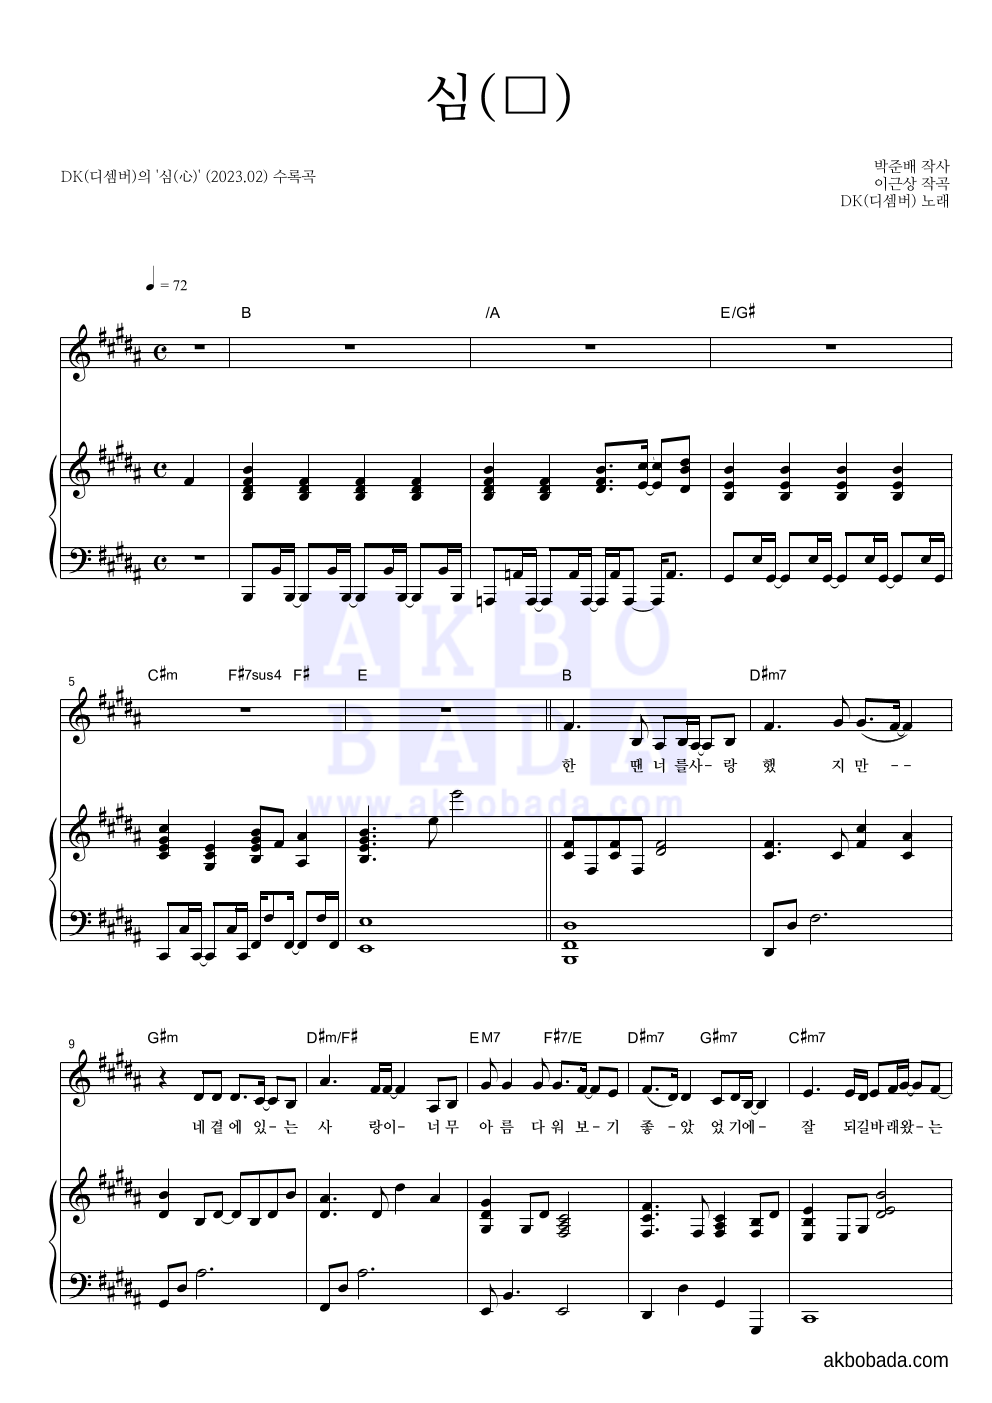 DK(디셈버) - 심(心) 피아노 3단 악보 